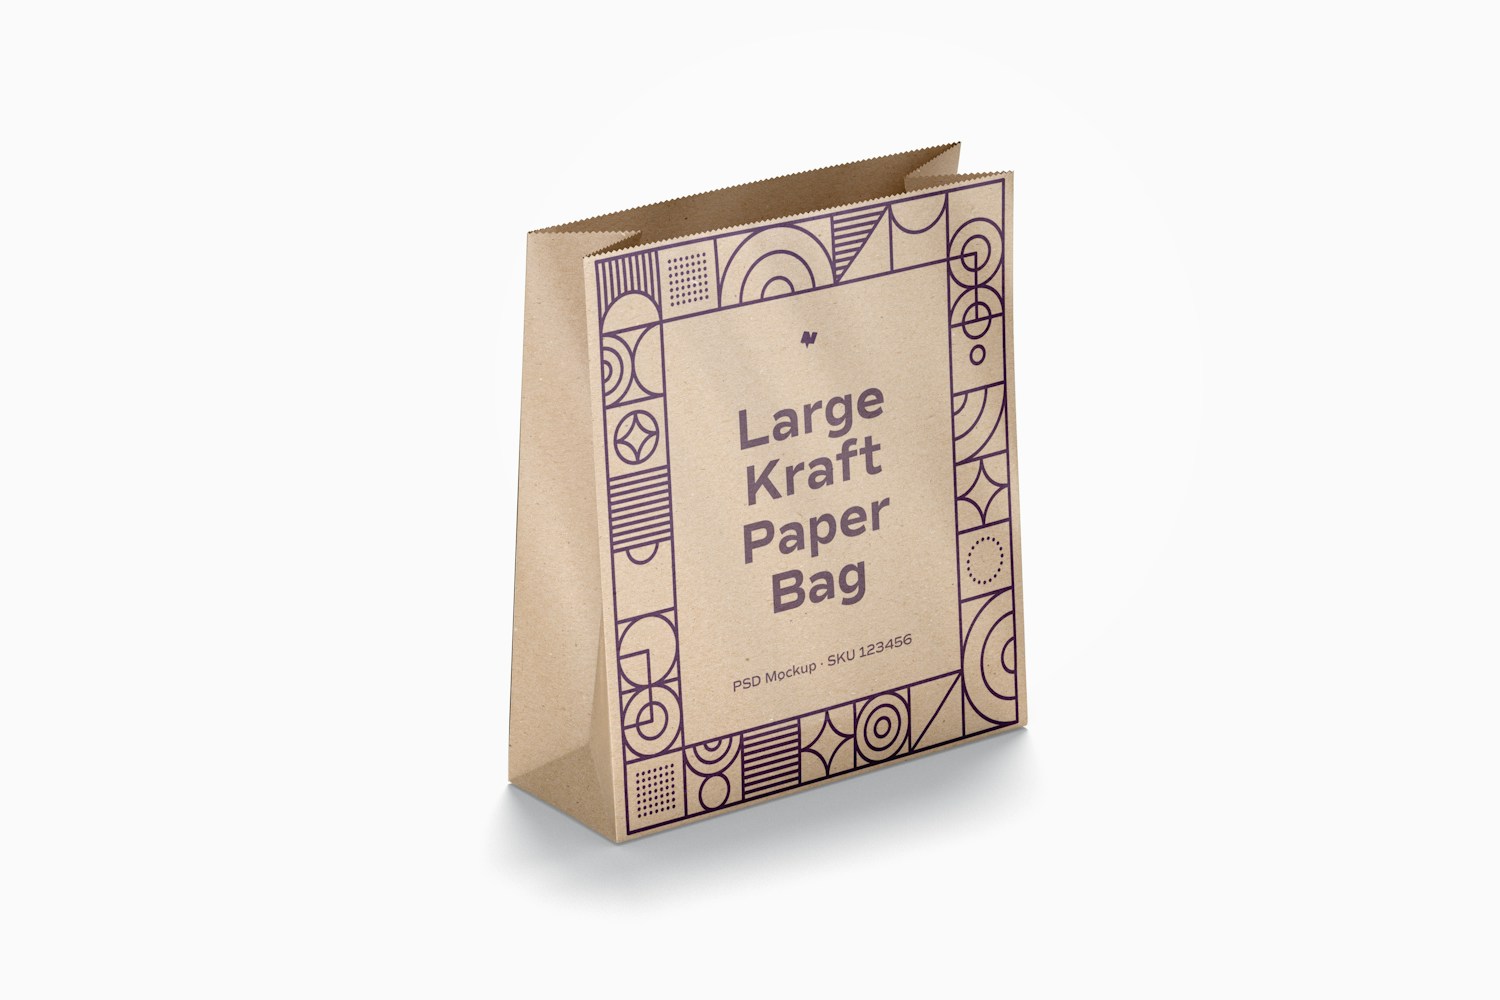 Large Kraft Paper Bag Mockup